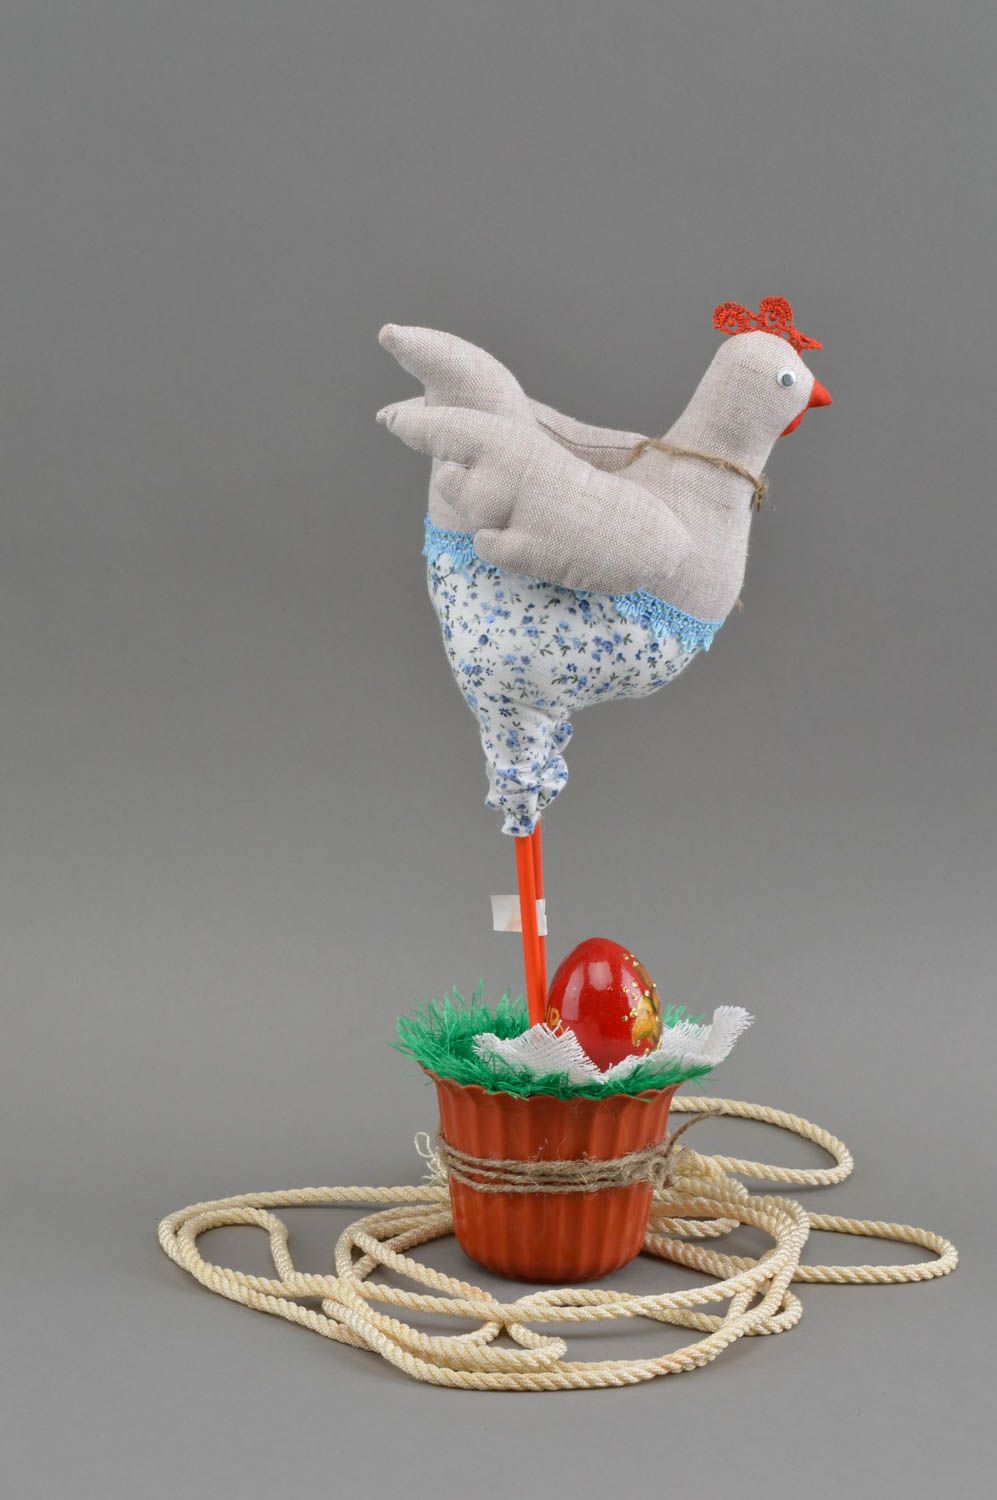 Интерьерная игрушка в виде курицы с расписным яичком ручной работы пасхальная фото 2